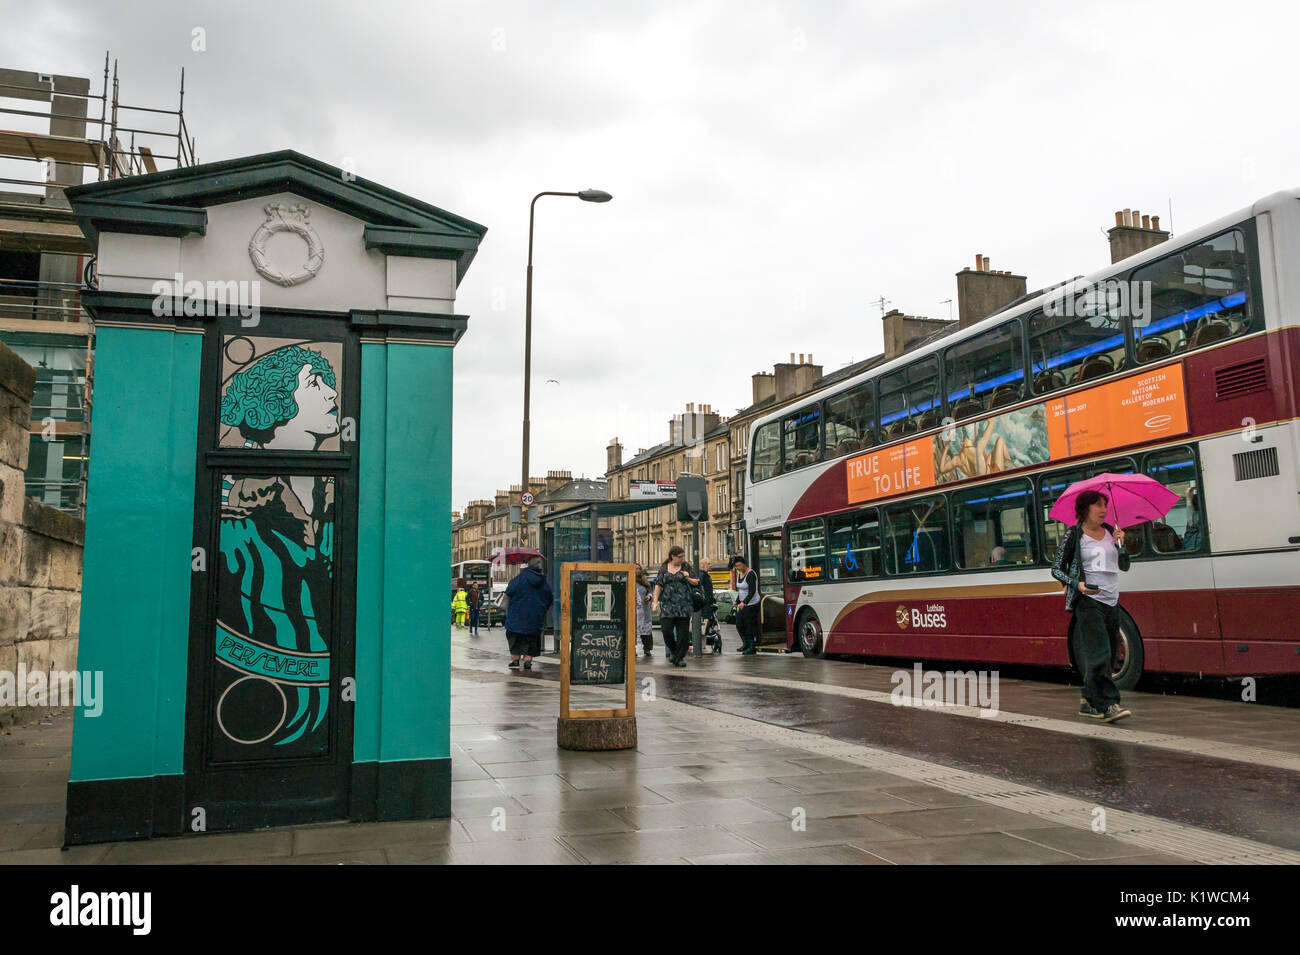 Dekorative Polizei rufen Box mit Leith motto Durchhalten, Leith Walk. Edinburgh, Schottland, Großbritannien mit Fußgängern und Lothian Bus vorbei gehen. Stockfoto